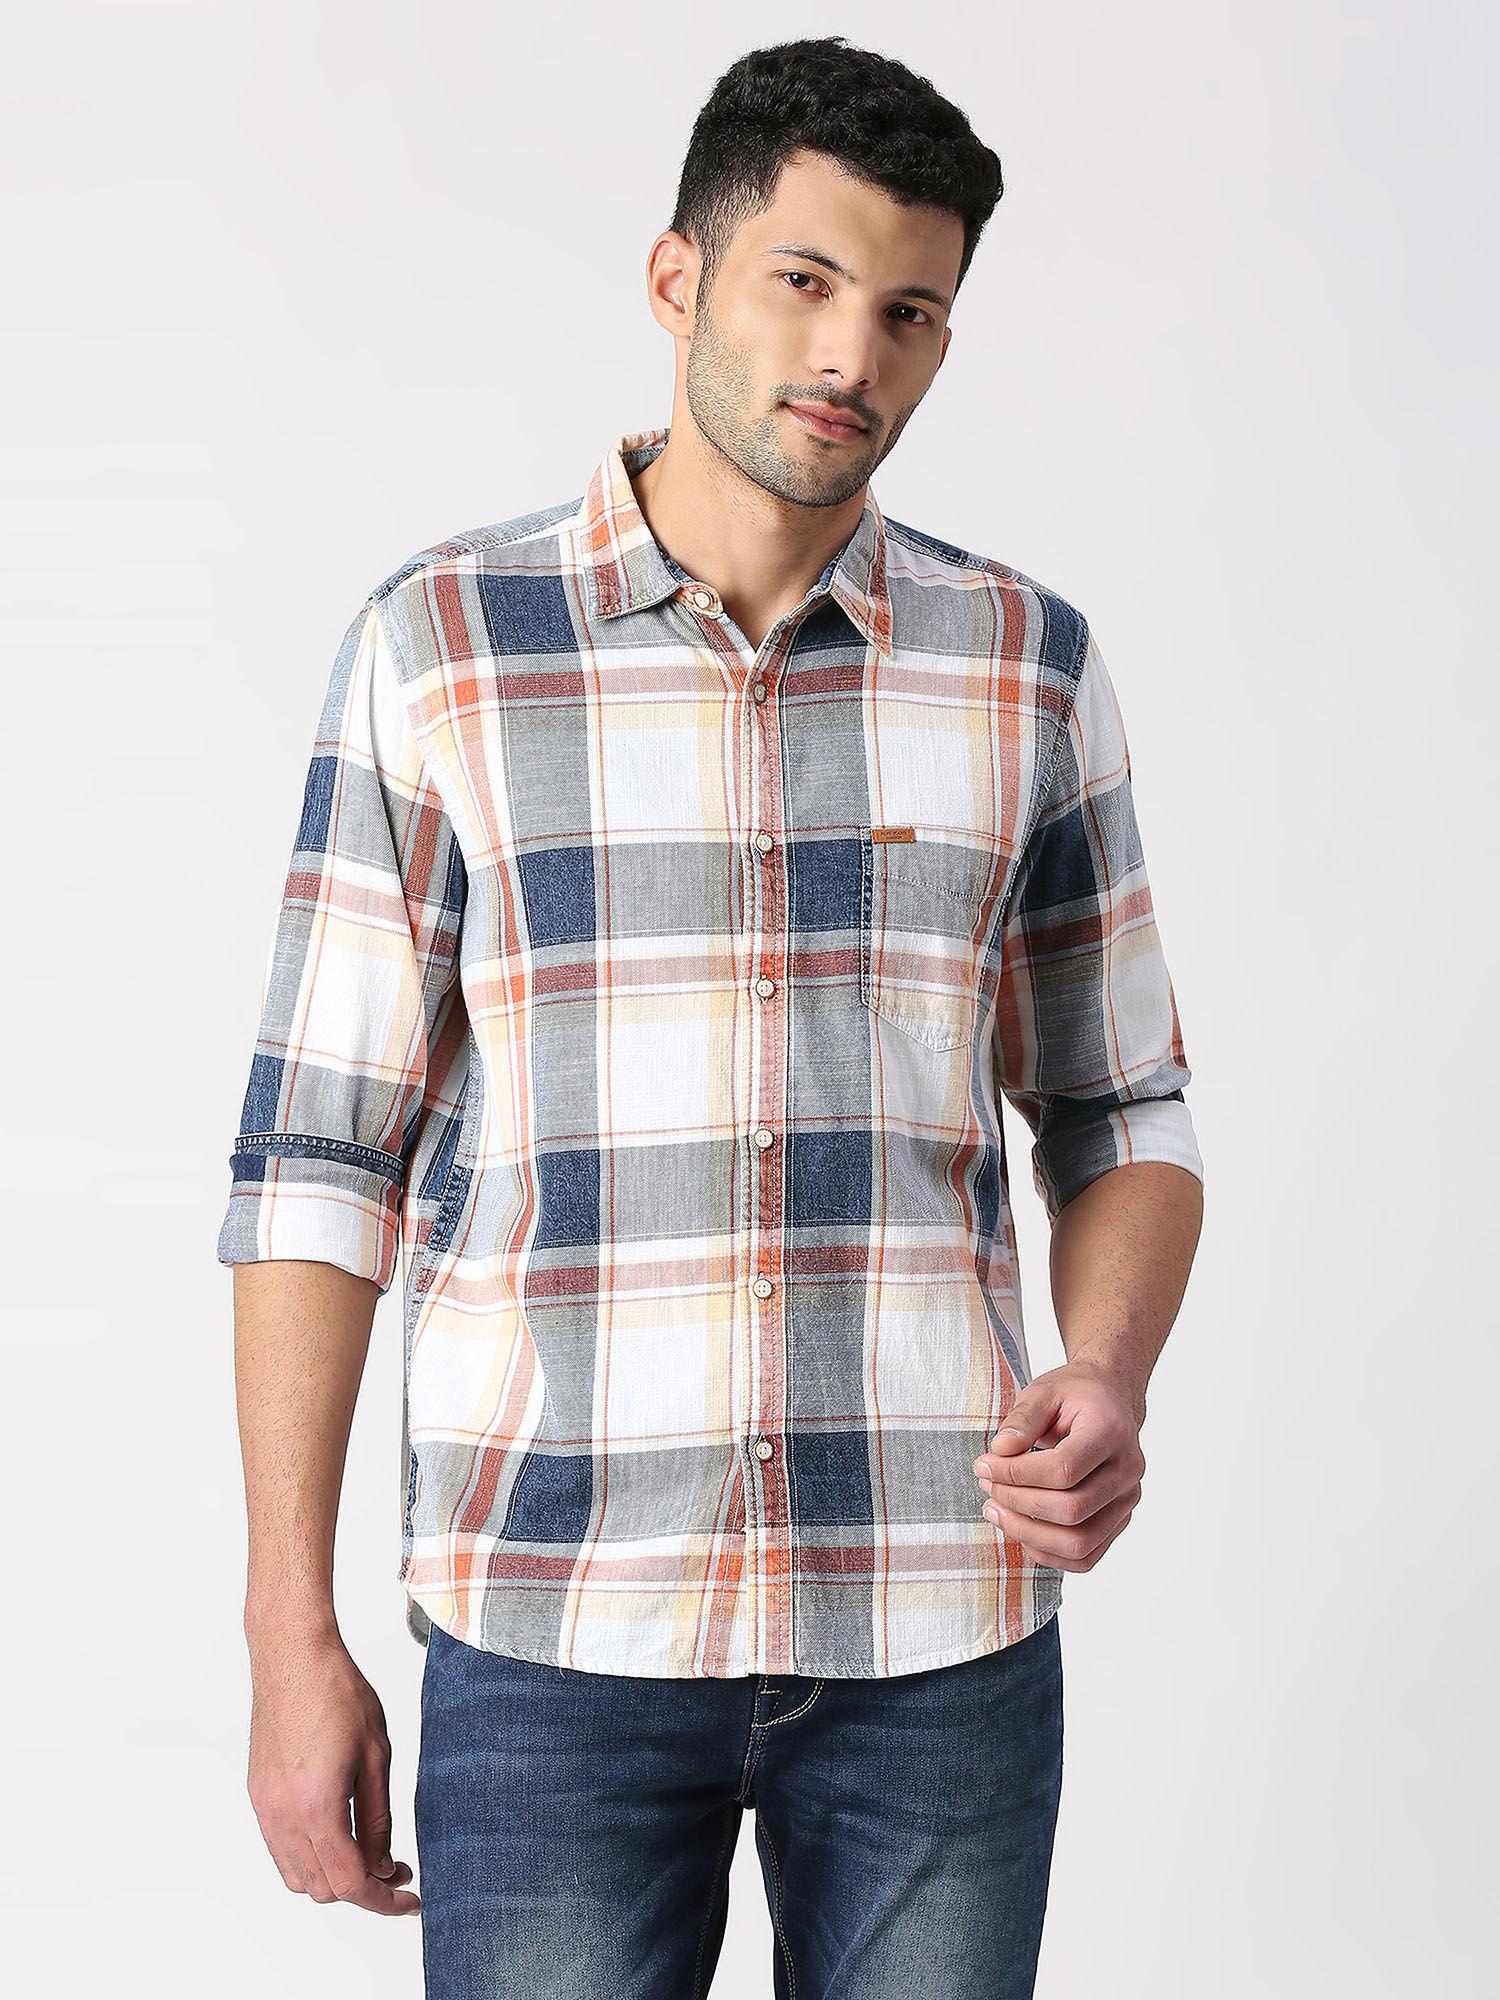 greyson full sleeves indigo check casual shirt